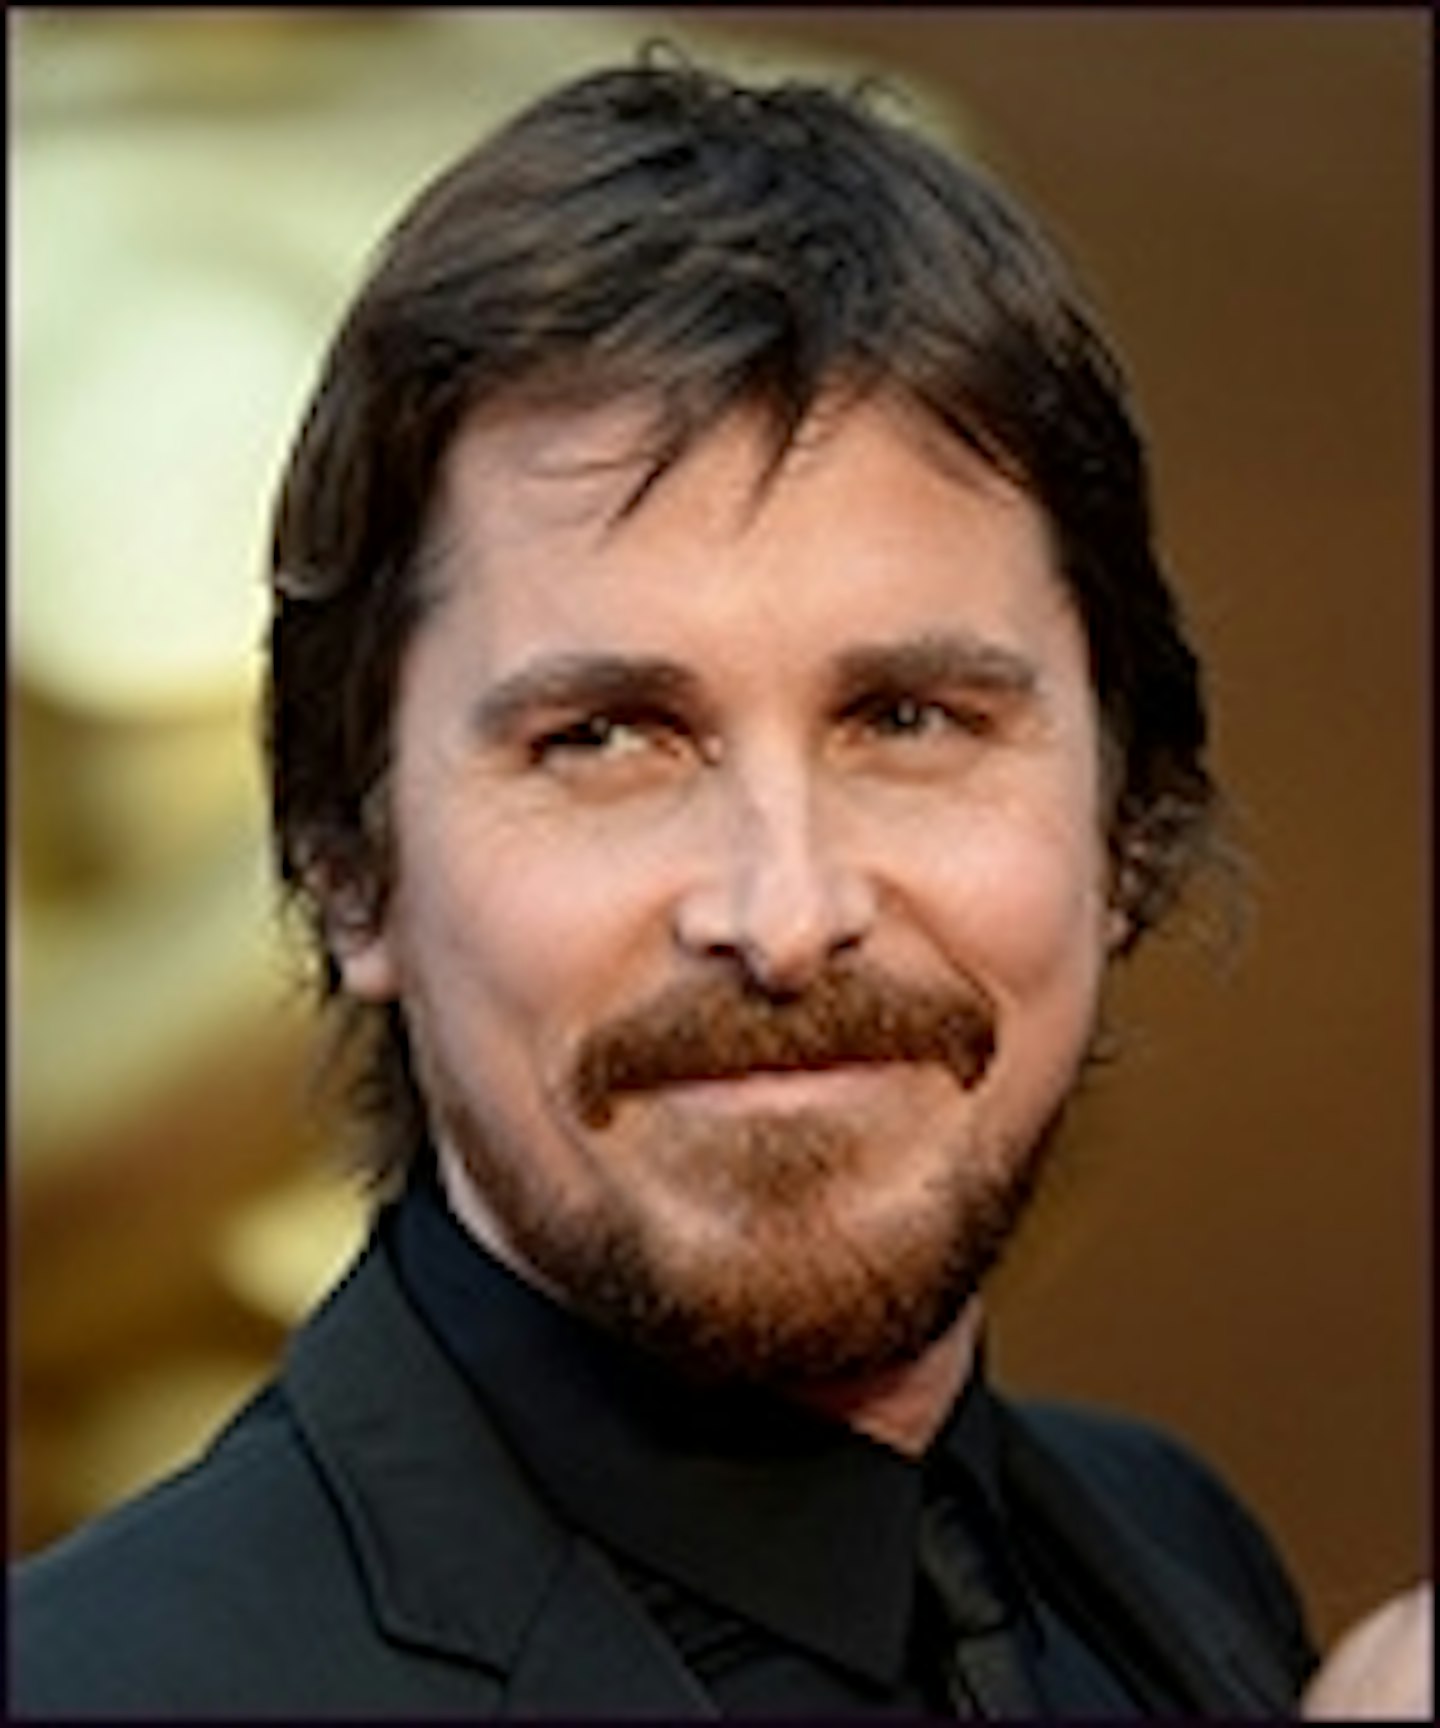 Christian Bale Will Not Be Steve Jobs